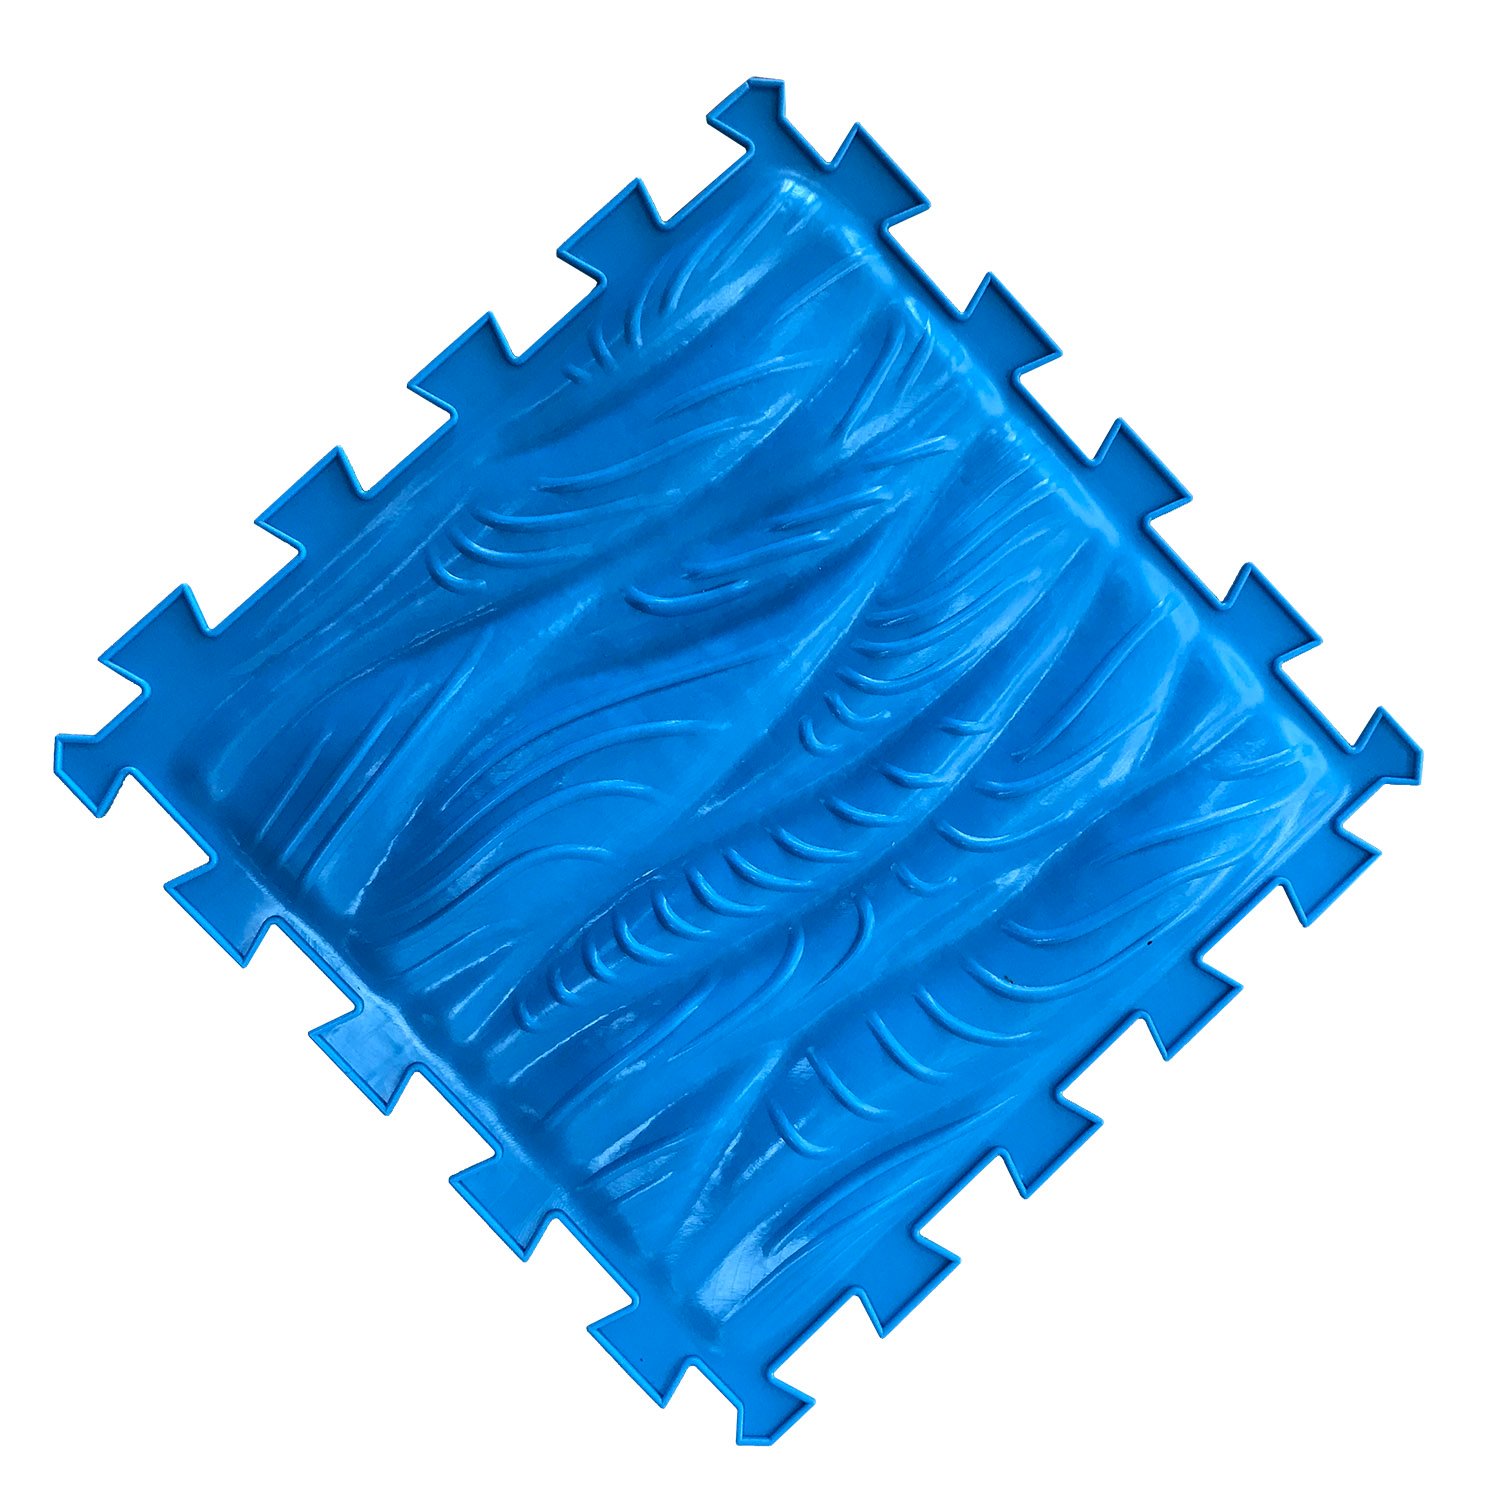 Модульный массажный коврик ОРТО ПАЗЛ «Морская Волна», 1 модуль, цвет синий